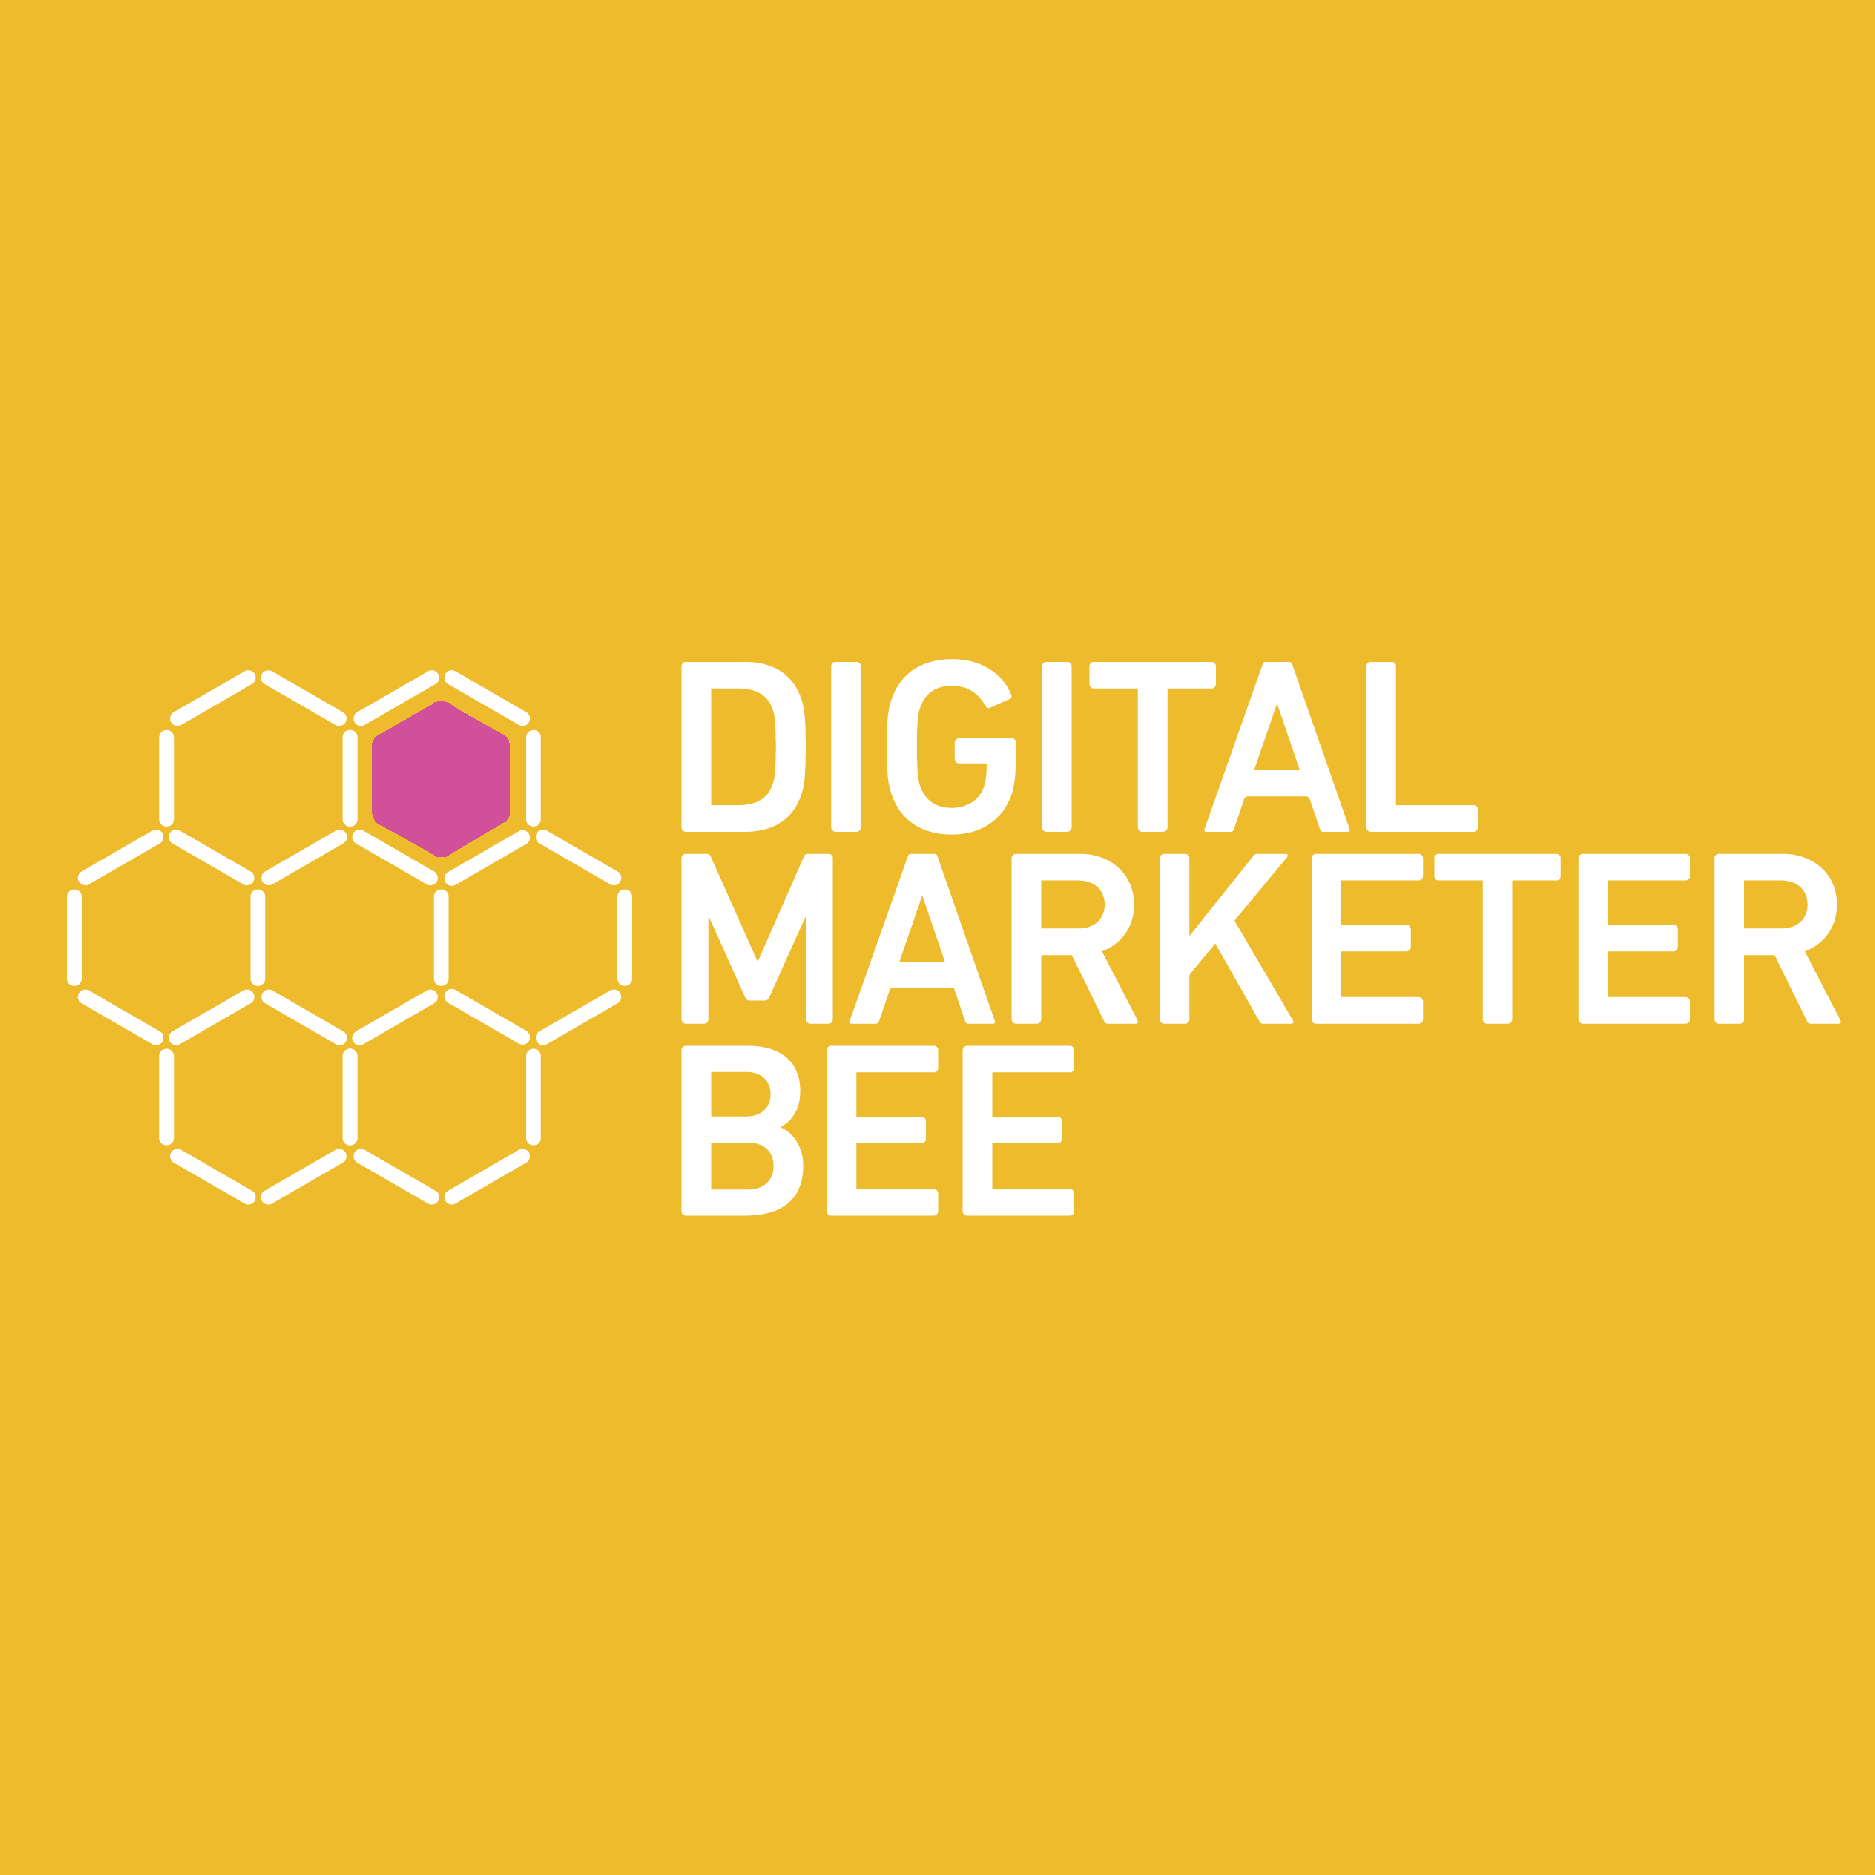 Digital Marketer Bee